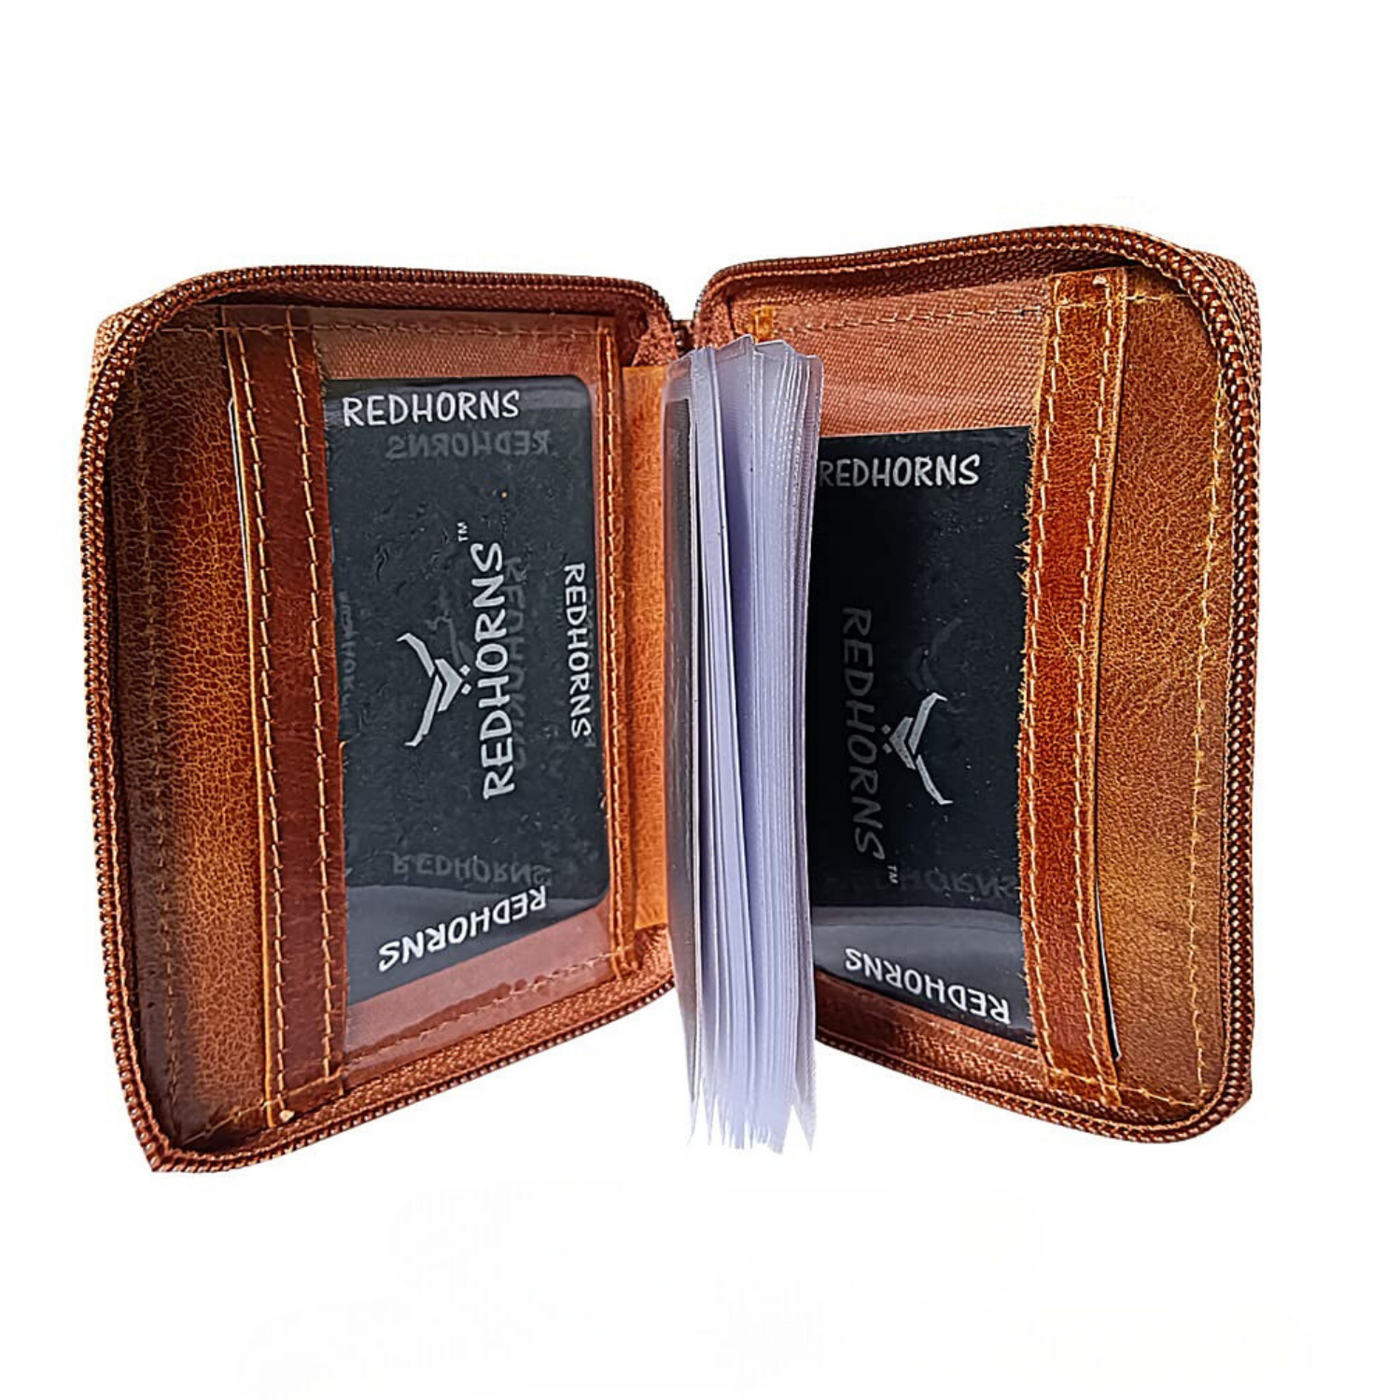 Redhorns Mens Genuine Leather Card Holder#color_tan